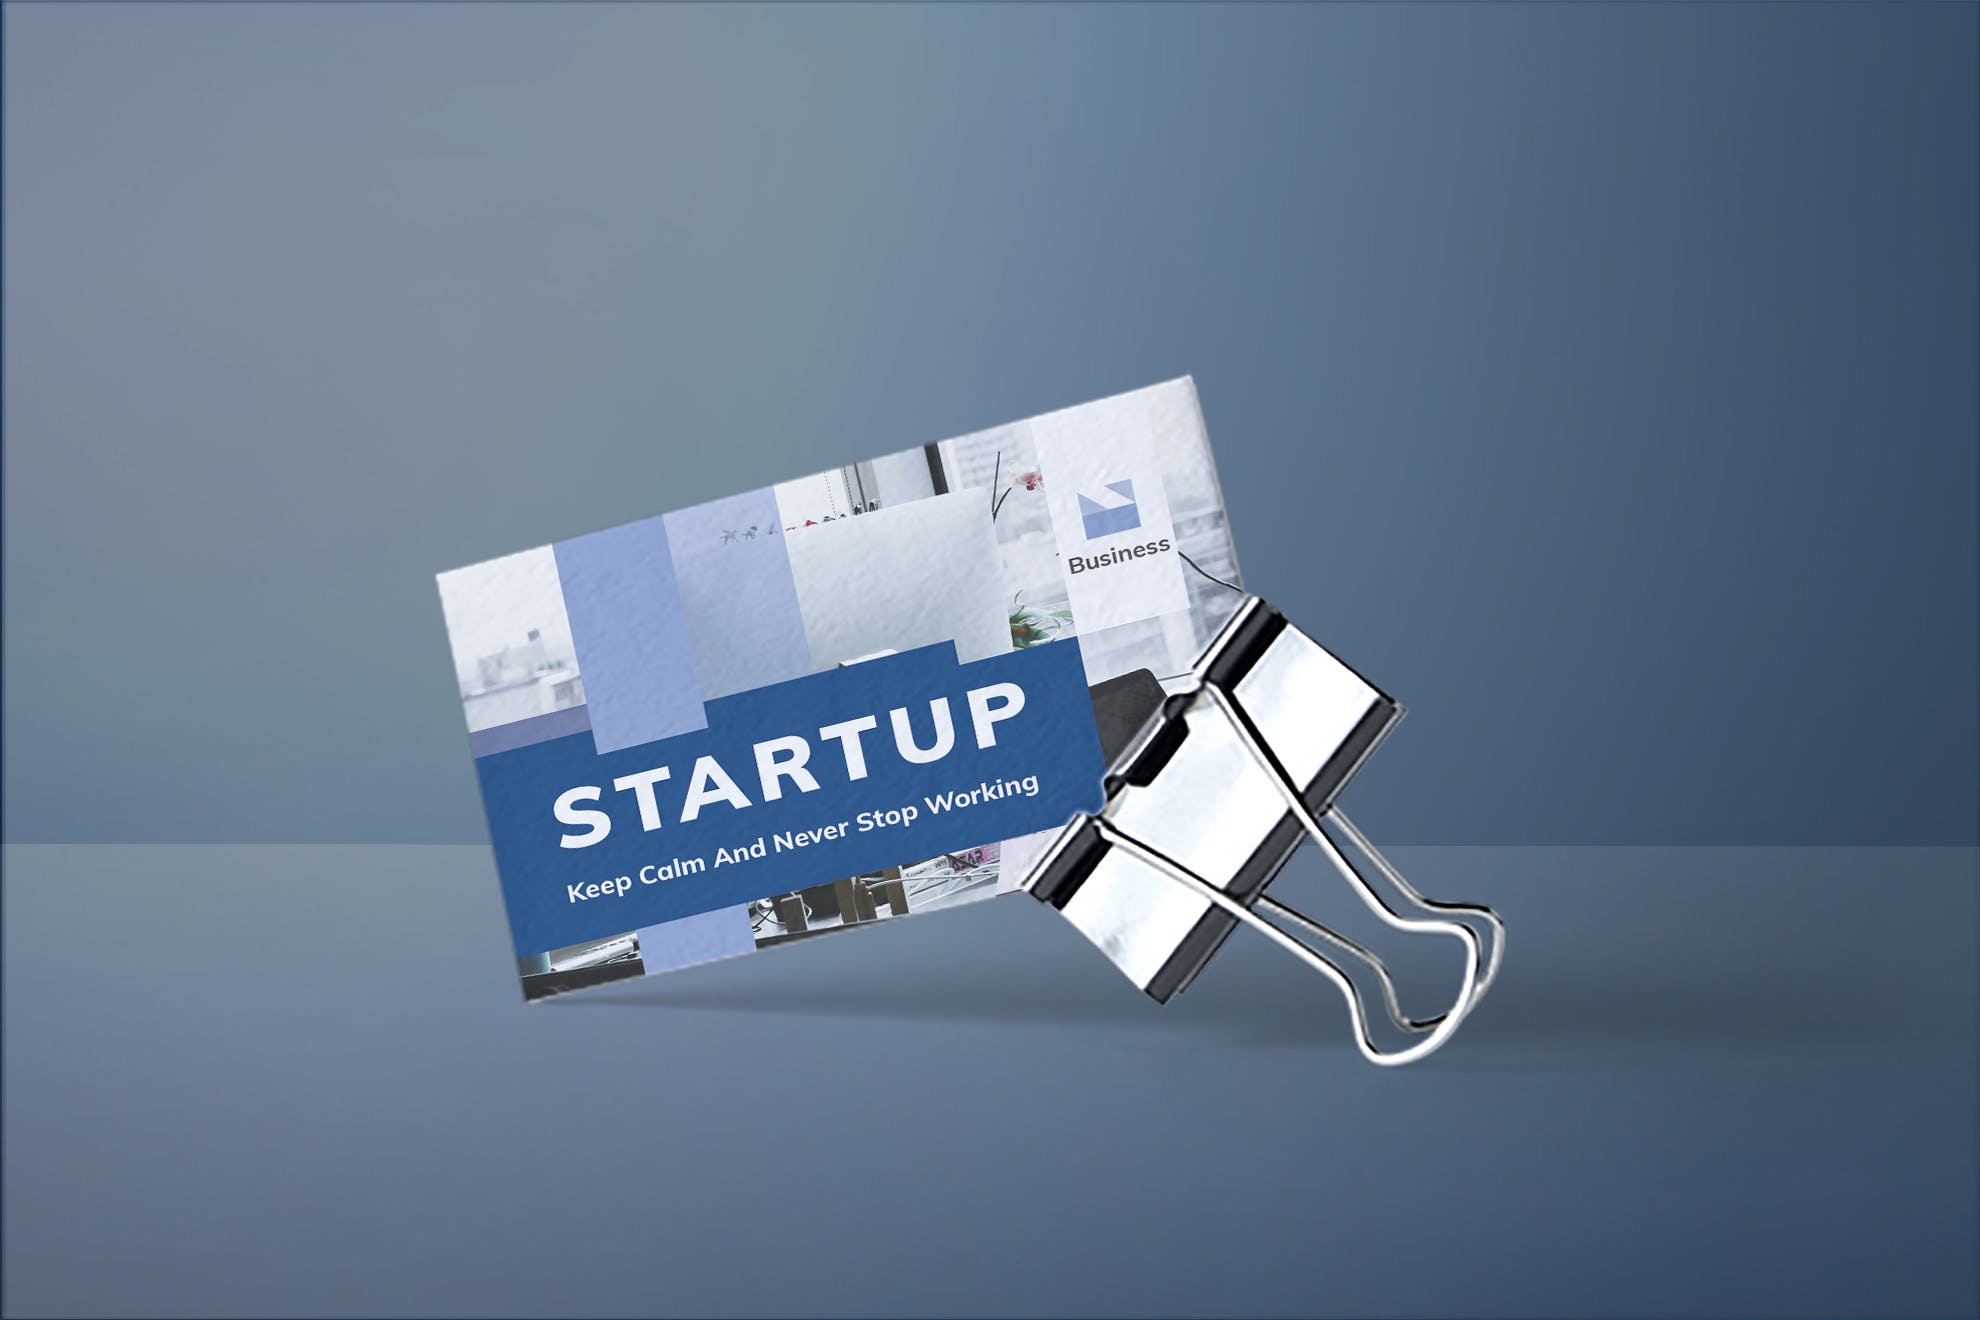 项目解决方案专家非凡图库精选名片模板 Startup Business Card插图(1)